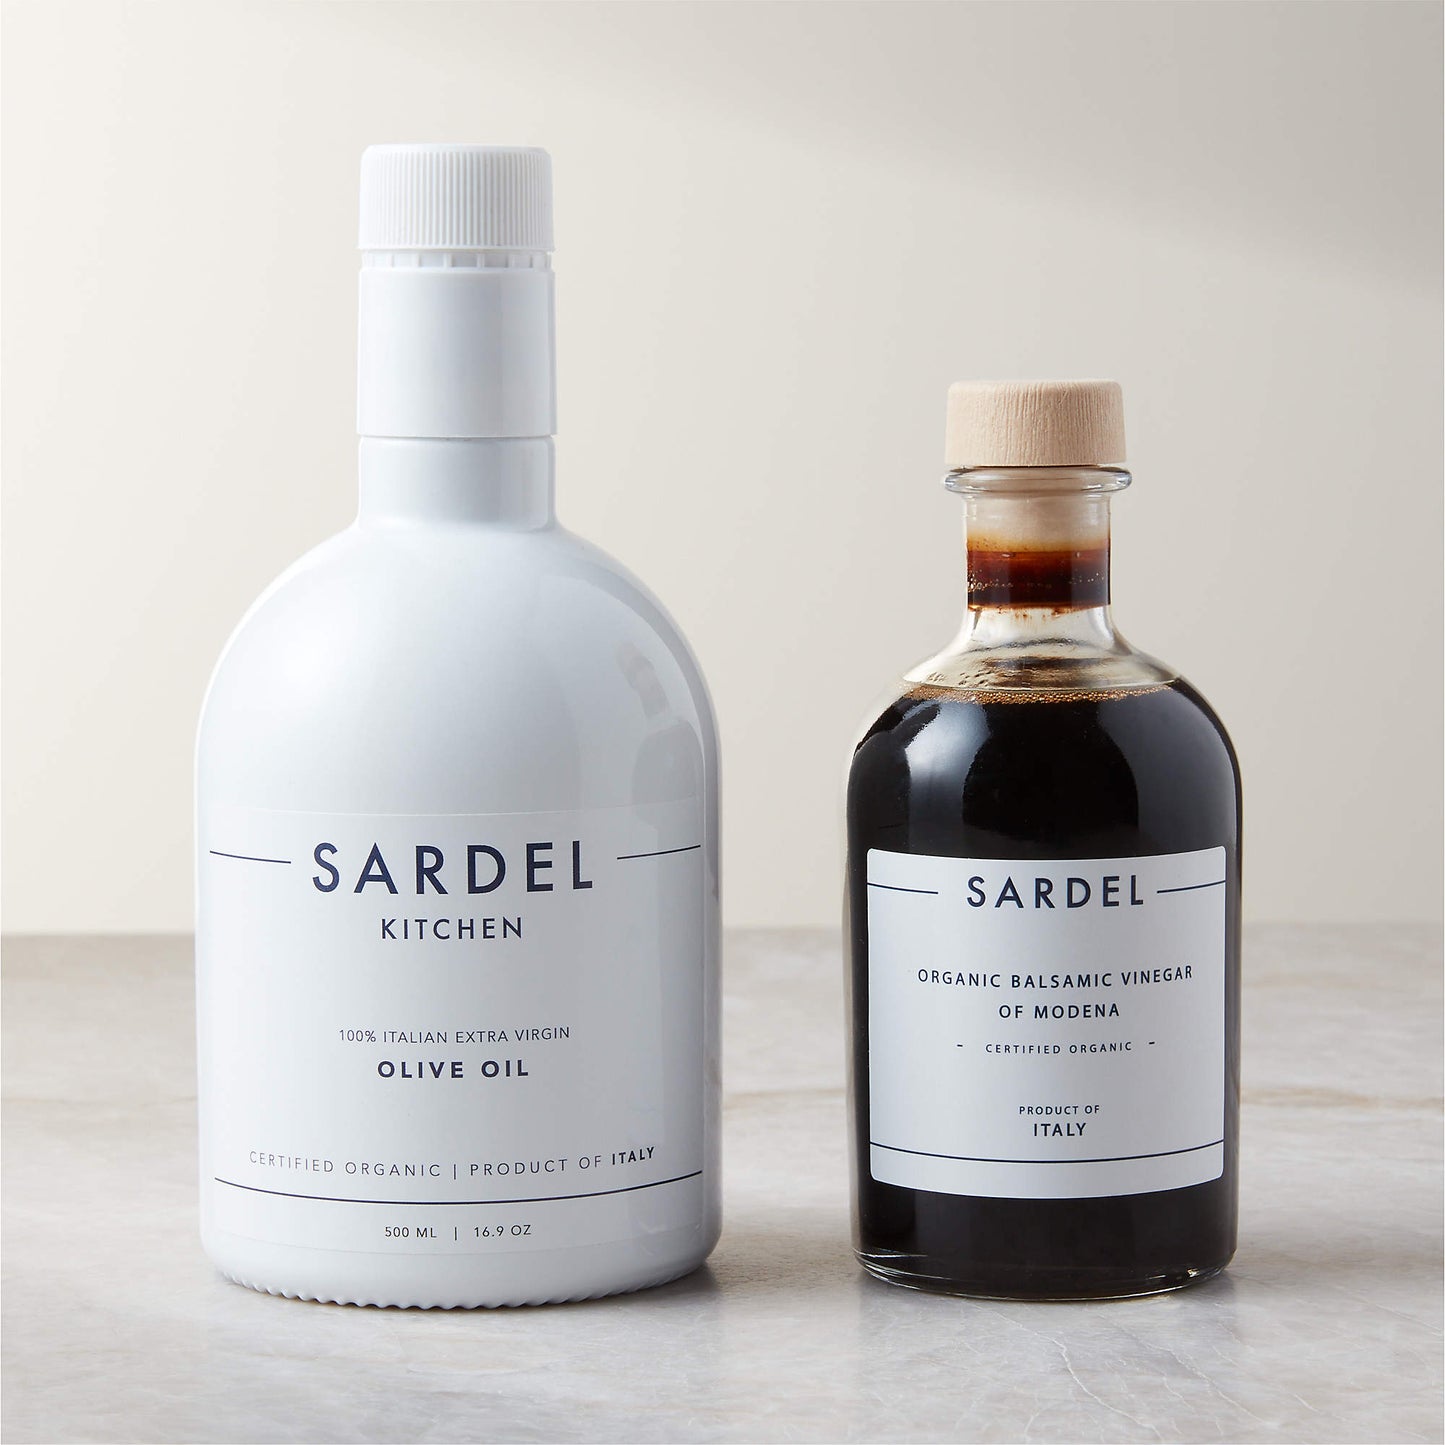 Sardel Organic Olive Oil